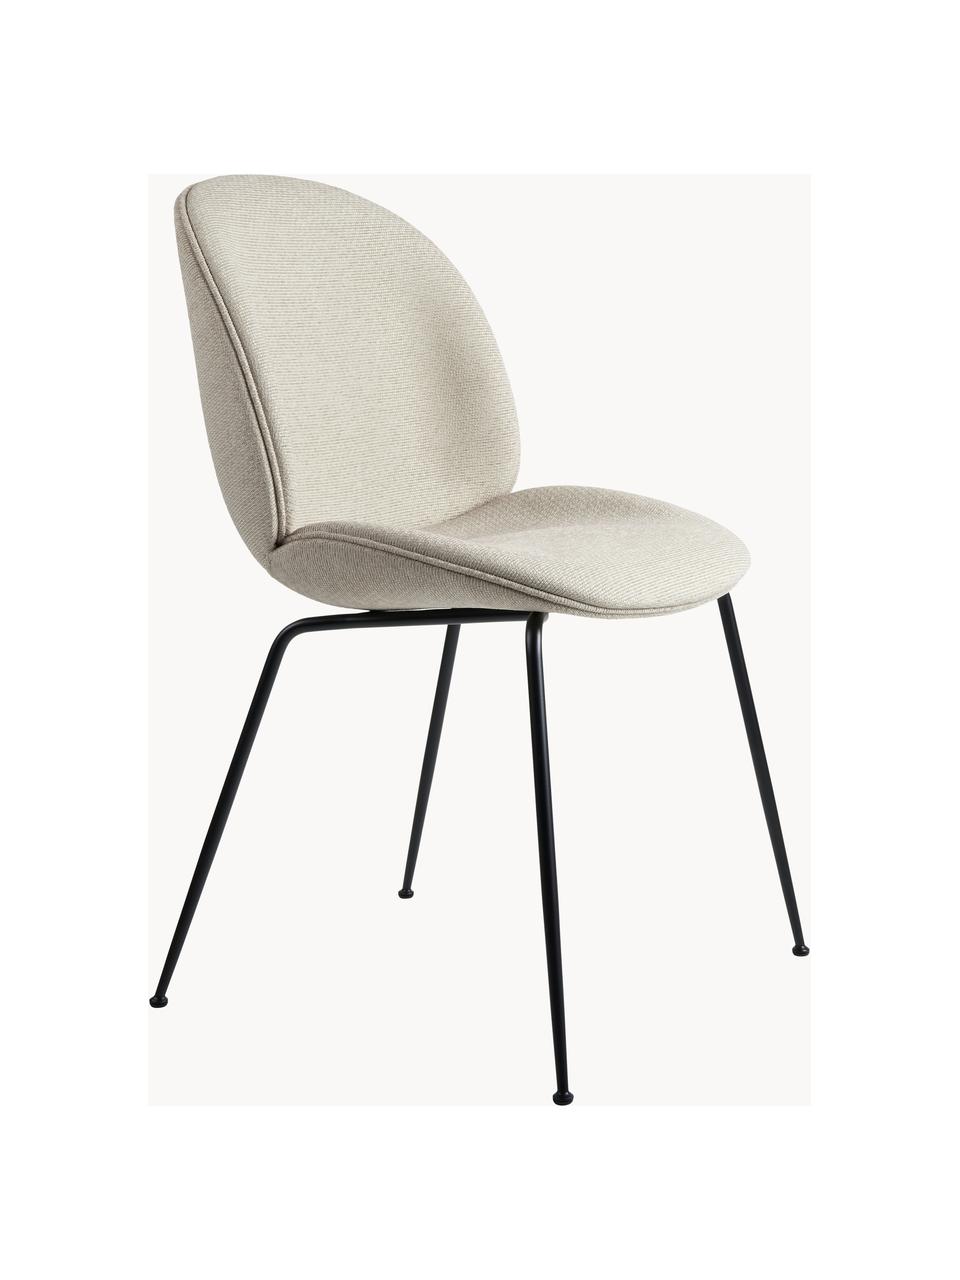 Čalouněná židle Beetle, Světle béžová, matná černá, Š 56 cm, H 58 cm